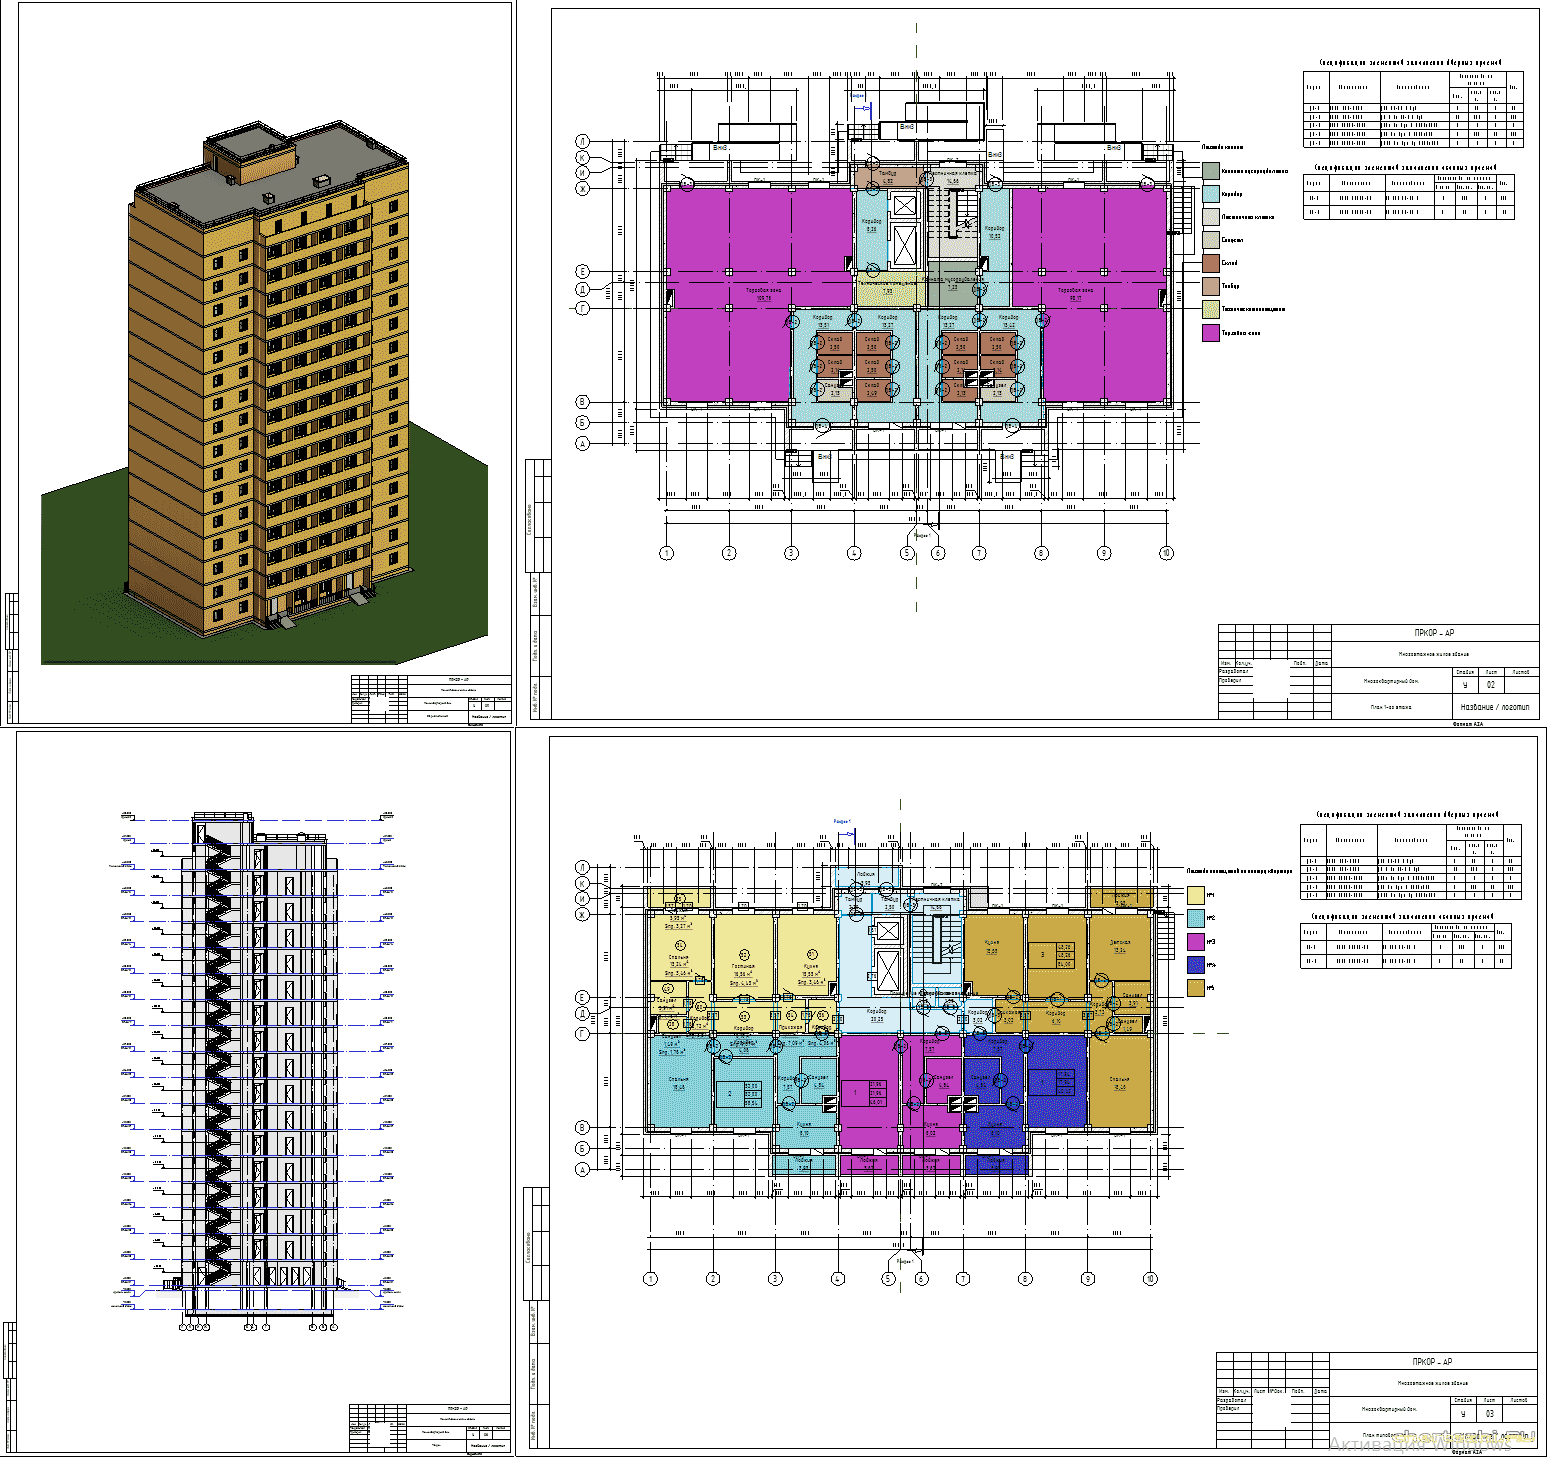 Курсовой проект - 16-ти этажный монолитный жилой дом 28,8 х 17,4 м в г. Екатеринбург